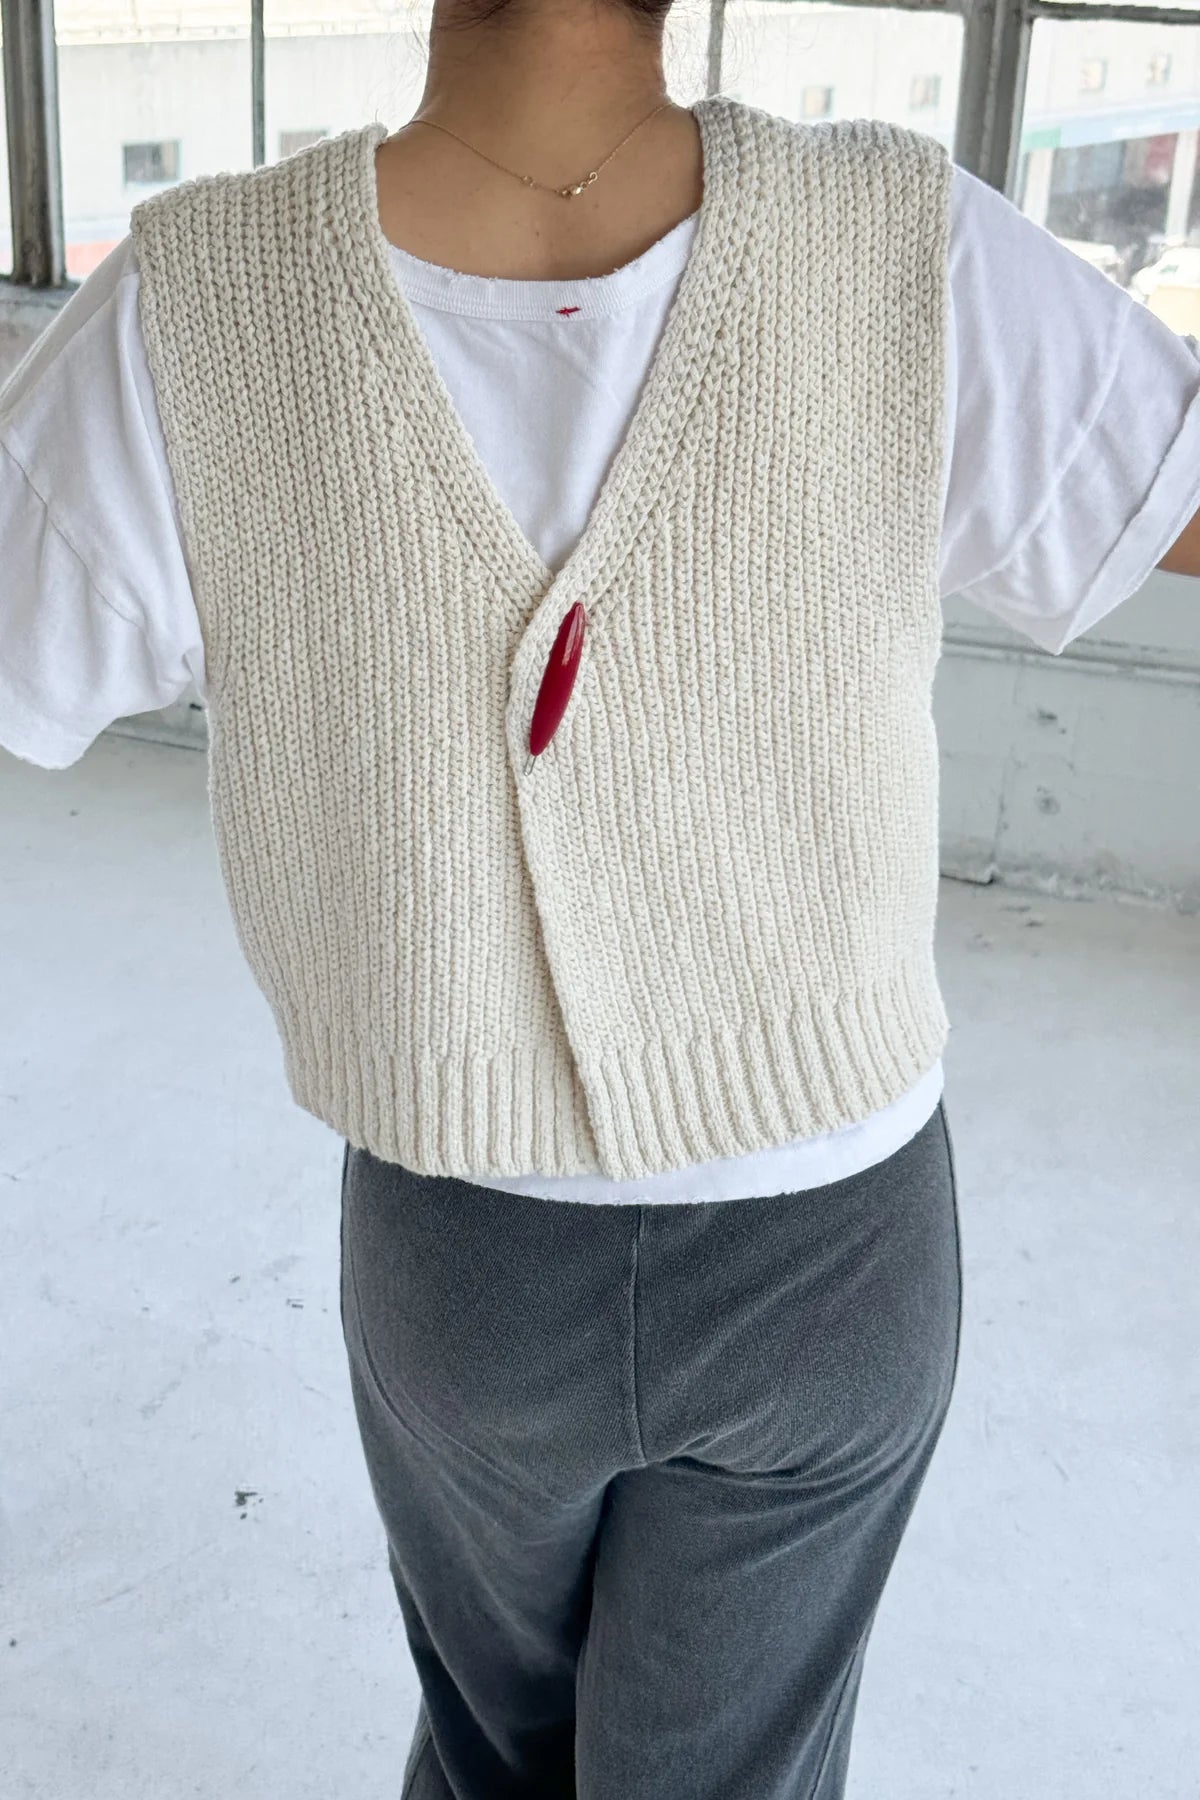 Le Bon Shoppe | Granny Cotton Sweater Vest - Naturel